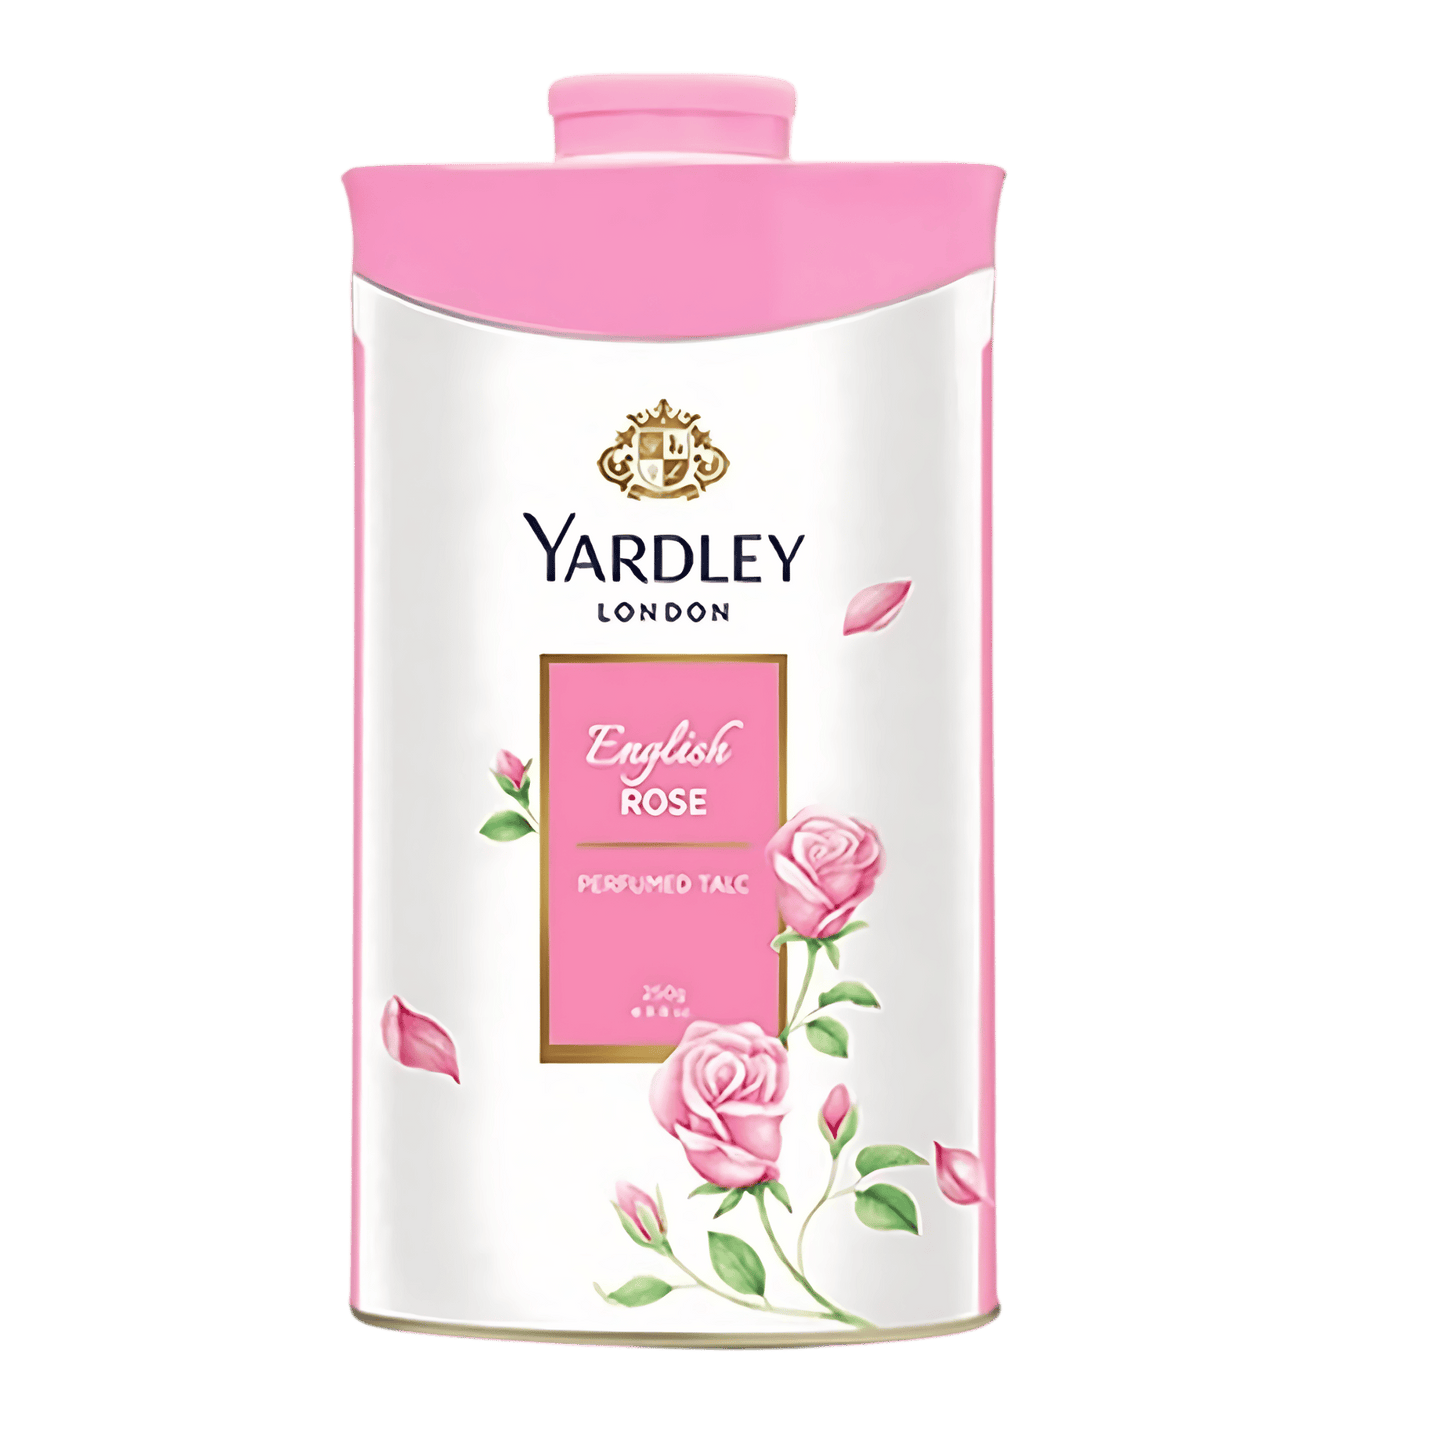 Yardley London Perfumed Talcum Powder (250g)